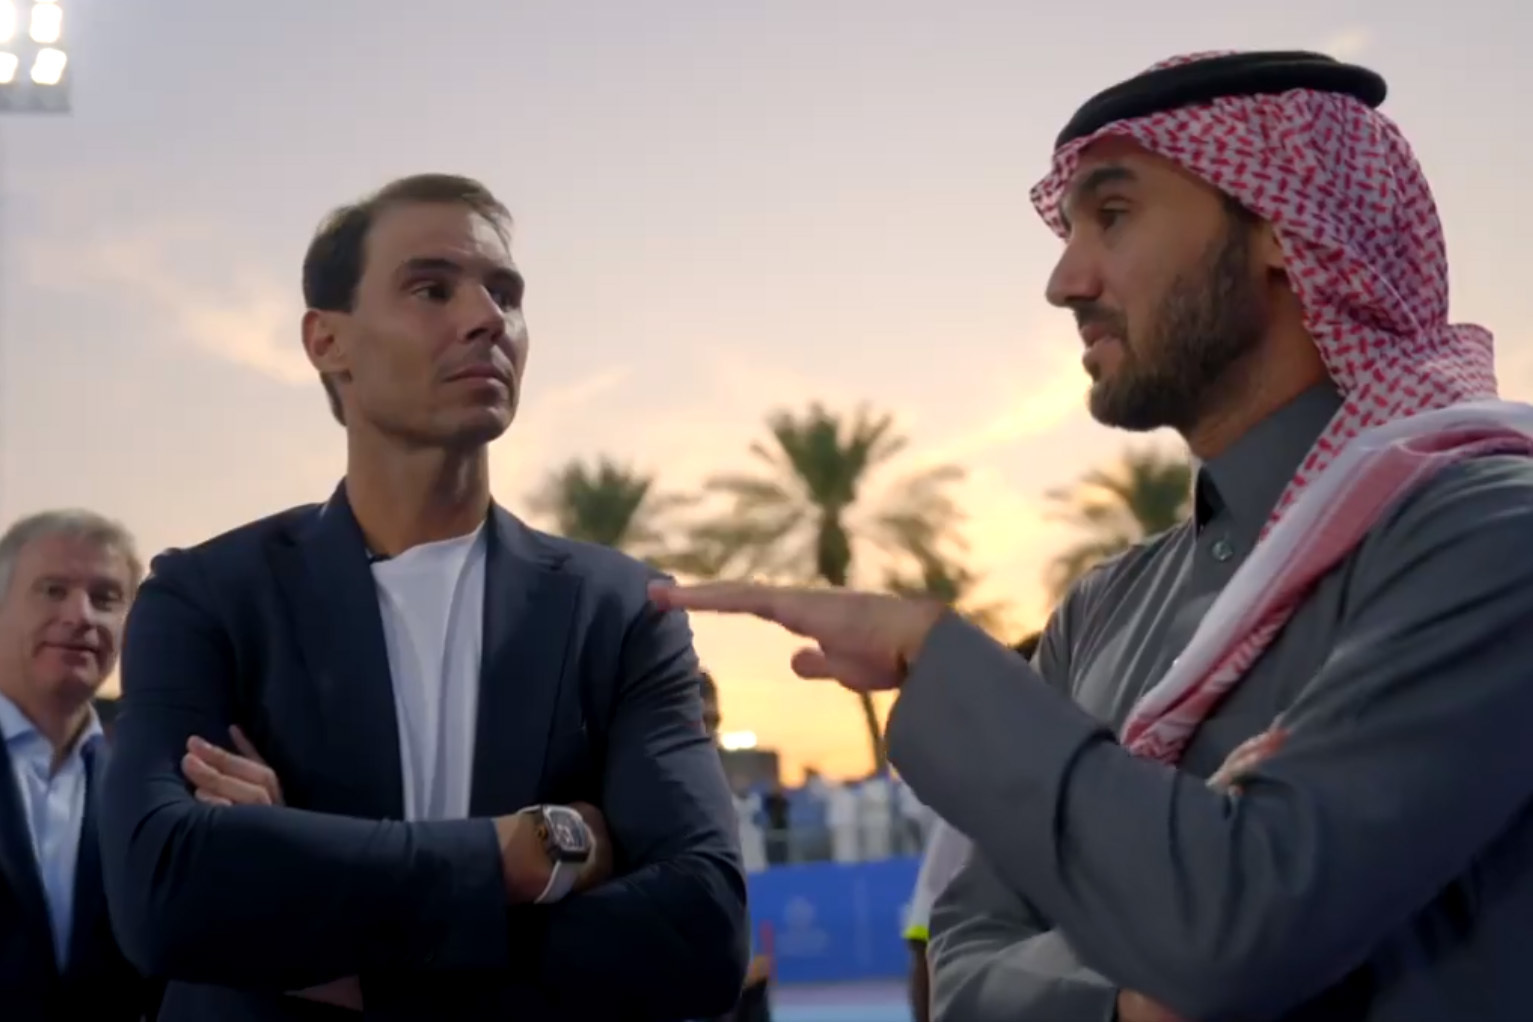 Captura de pantalla de un video promocional difundido por el tenista Rafa Nadal para dar a conocer su participacin en los programas de difusin del tenis de la Federacin de Tenis saud.